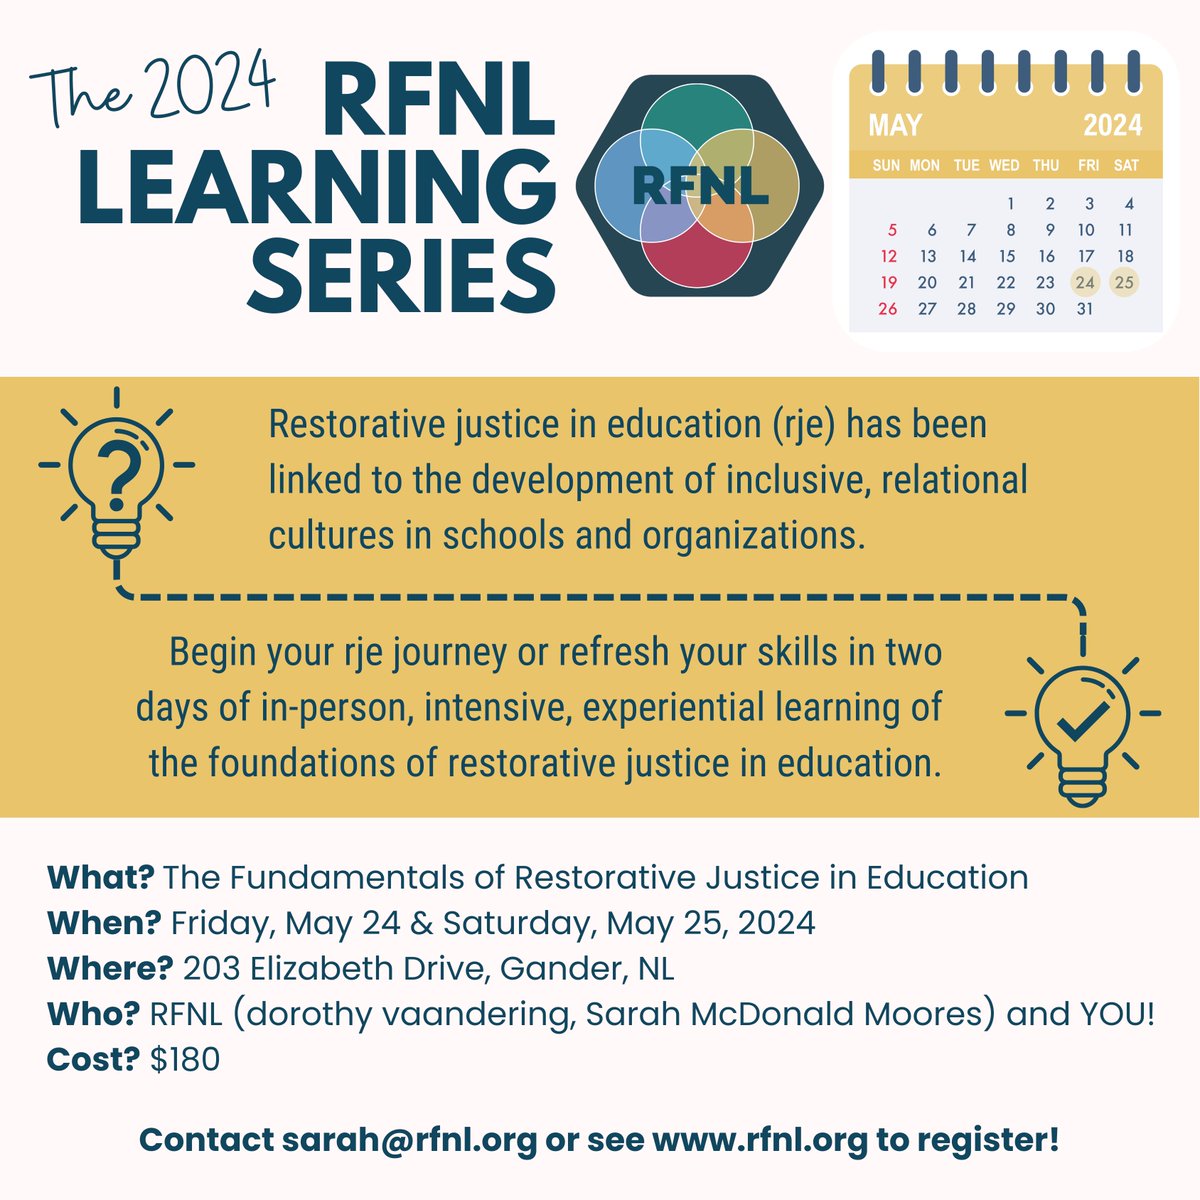 REGISTRATION IS NOW OPEN!
Join us in Gander, NL, May 24-25, 2024! #restorativejusticeeducation #professionallearning #gander #newfoundlandandlabrador #education #nlschools